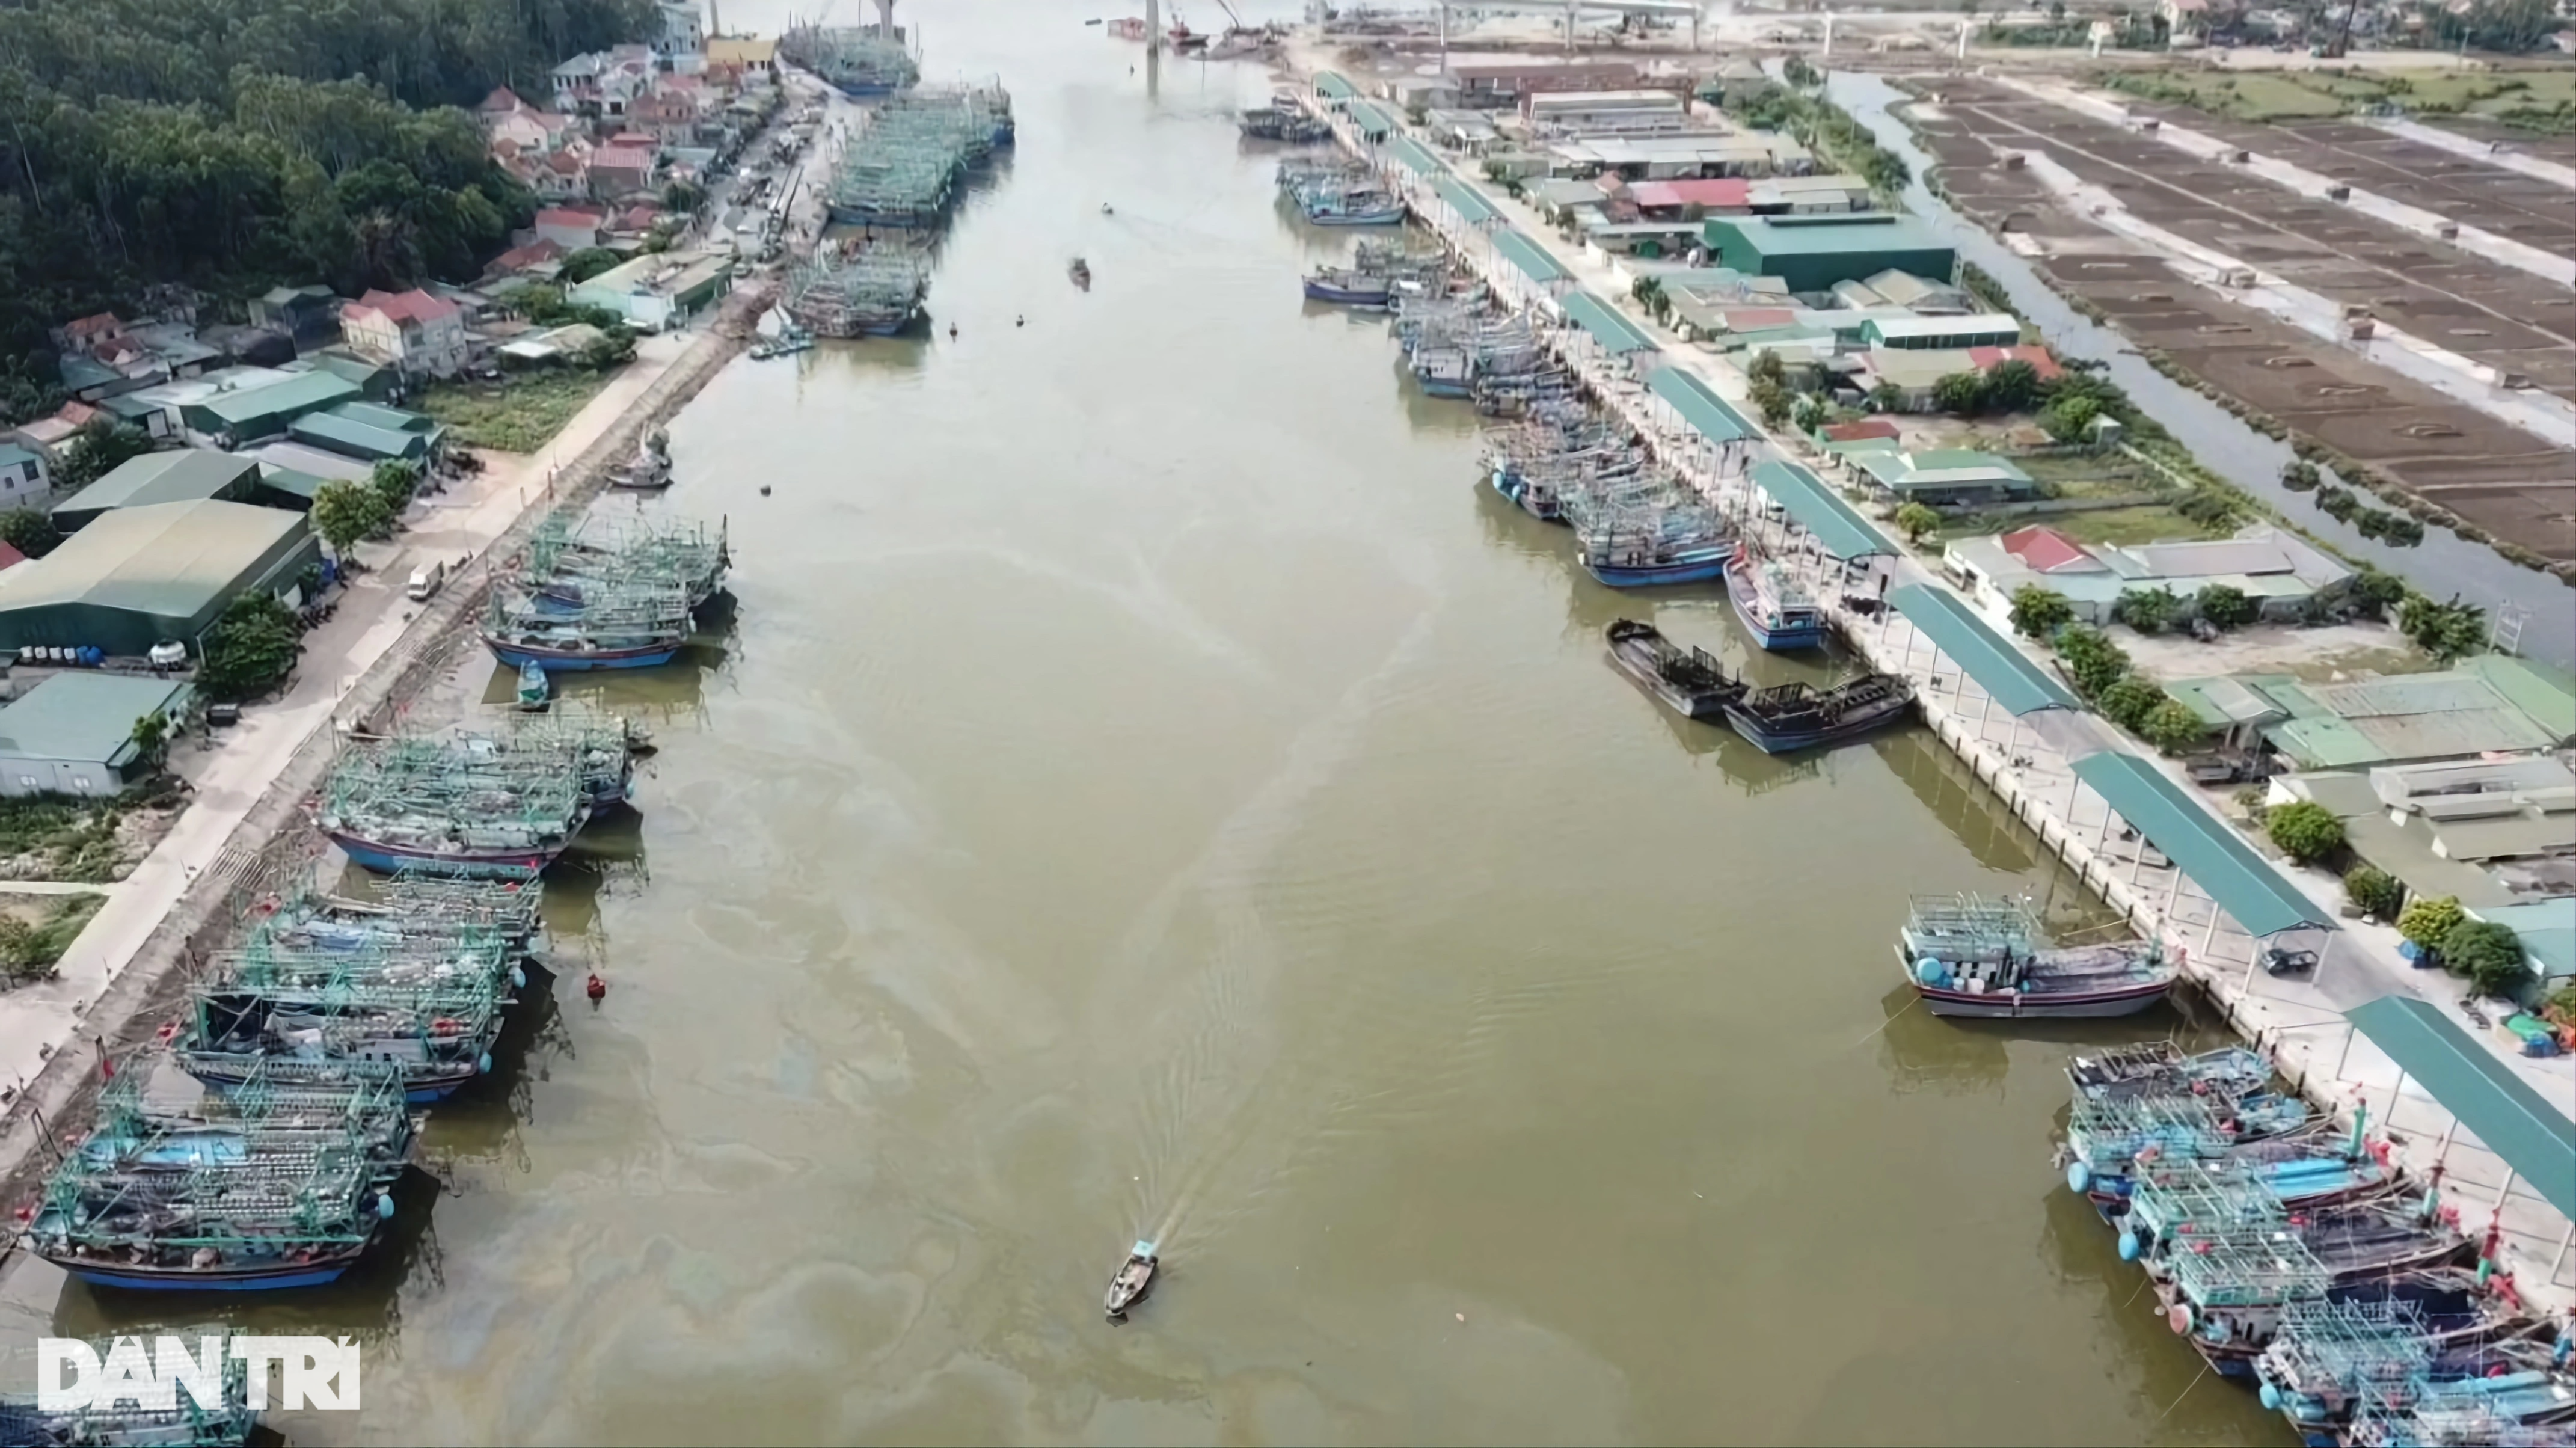 Vụ cháy 5 tàu cá ở Nghệ An: Hộp cứu hỏa rỗng không - 1